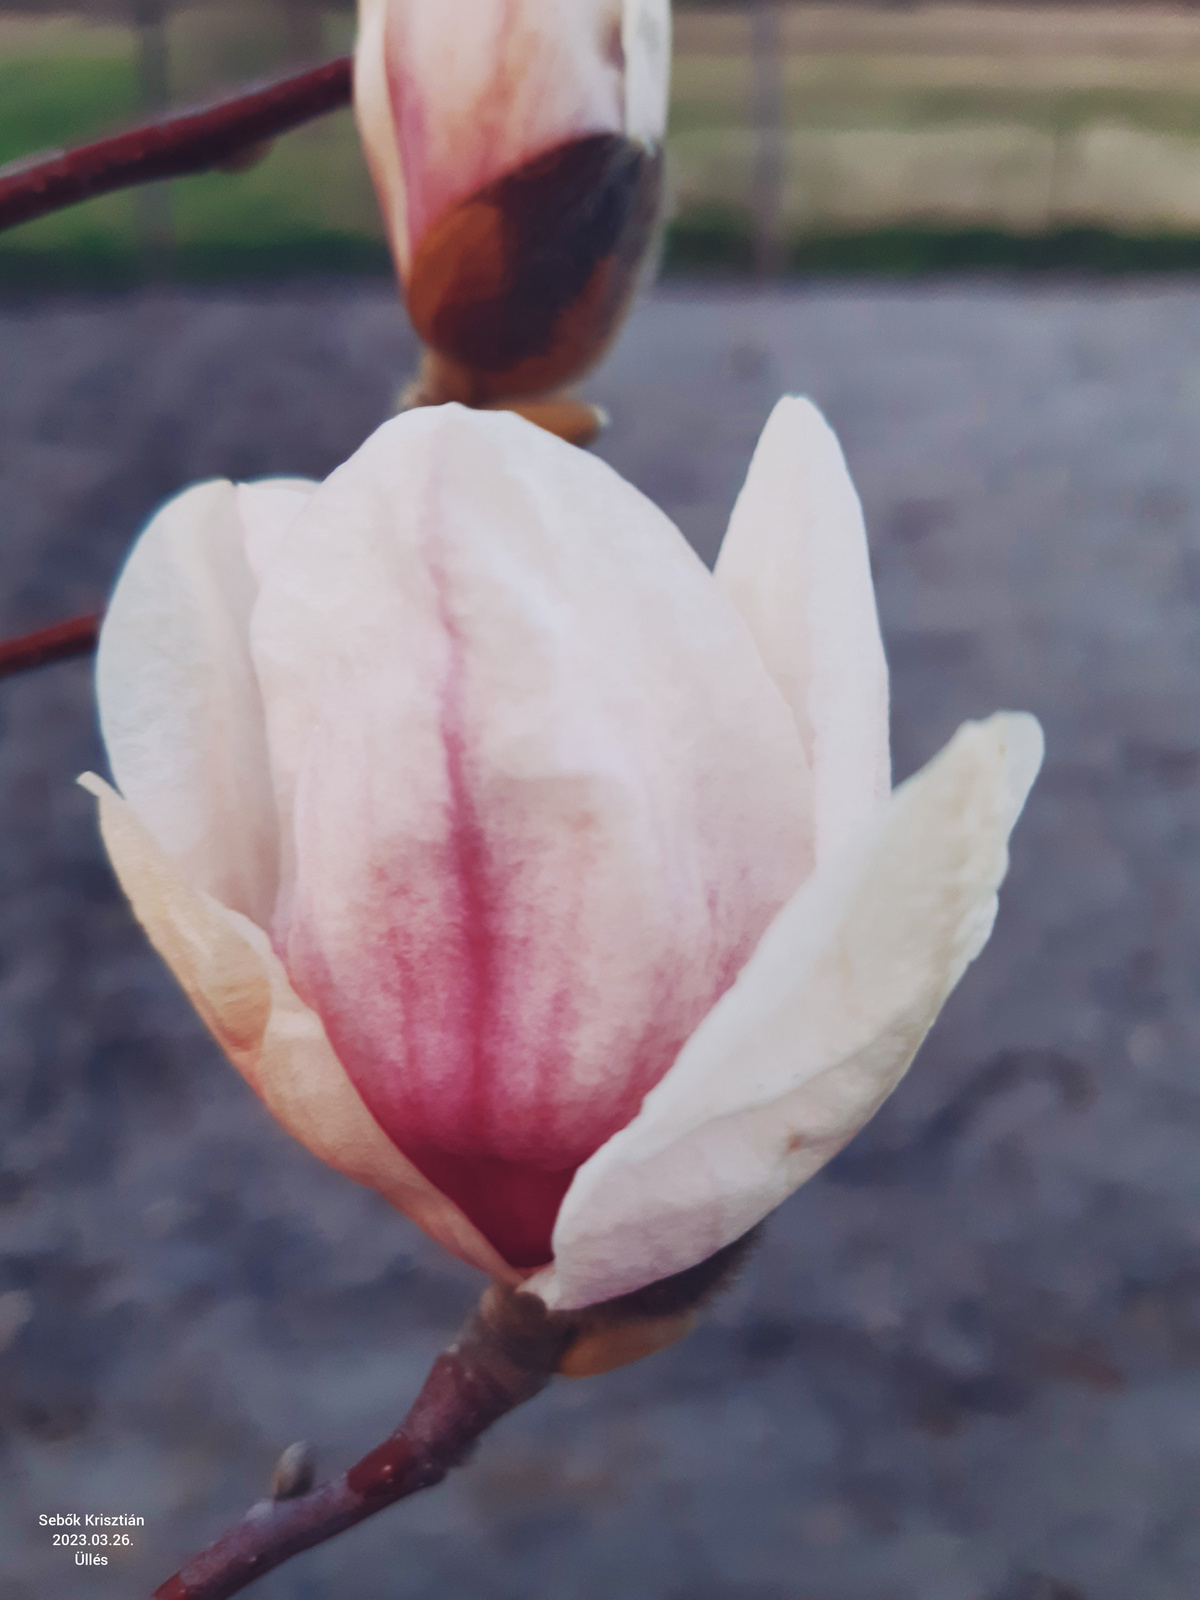 Fehér magnólia virága Üllés, Rózsa dűlő 2023